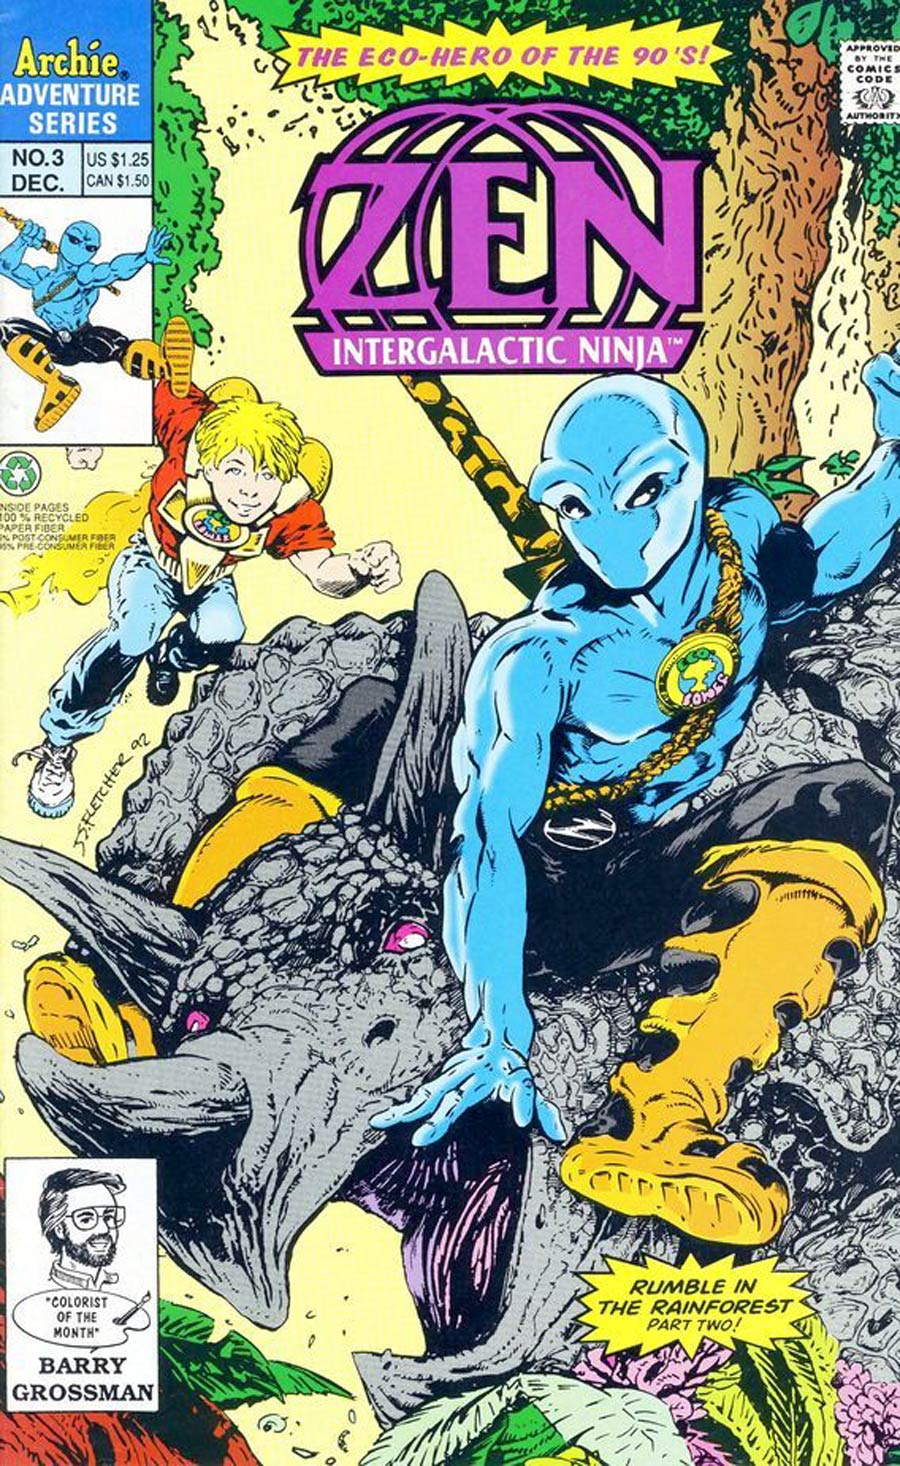 Zen Intergalactic Ninja (Mini Series) Vol 2 #3